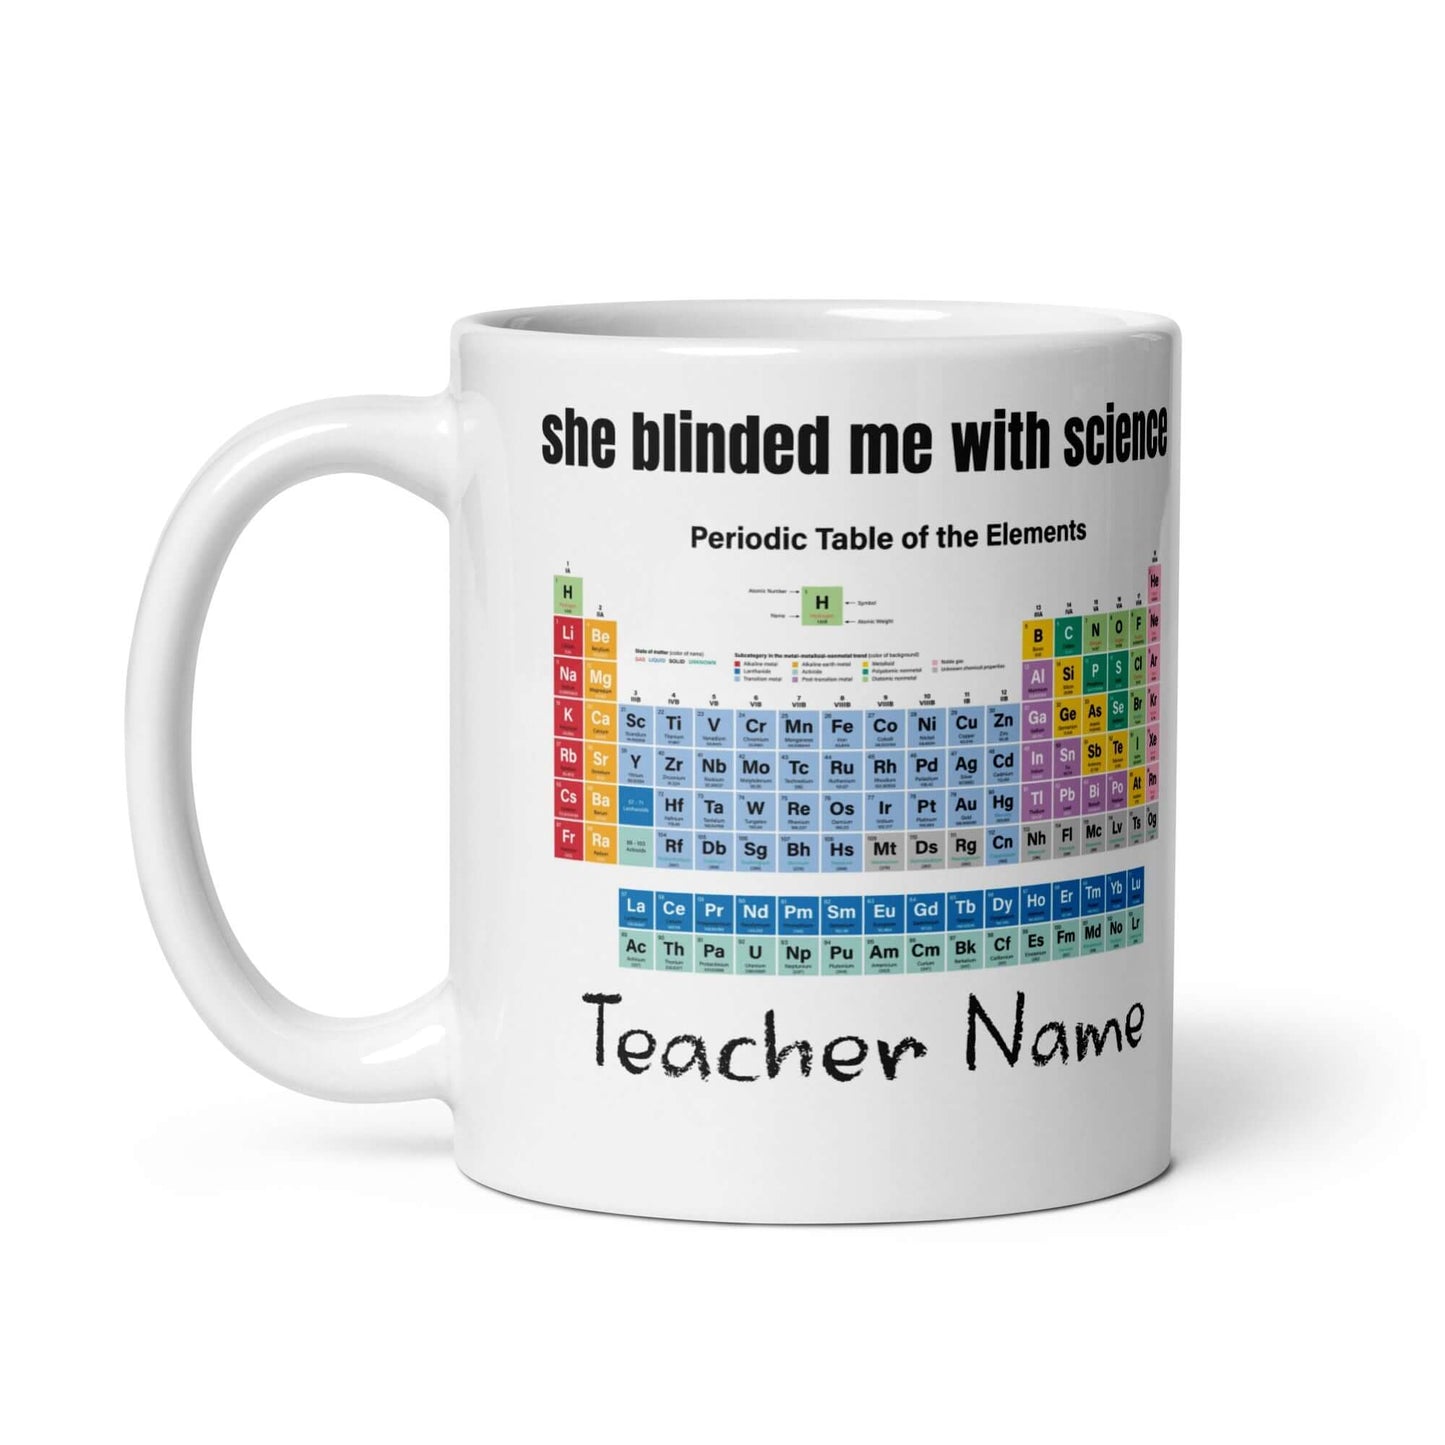 Science Teacher - White glossy mug - Horrible Designs